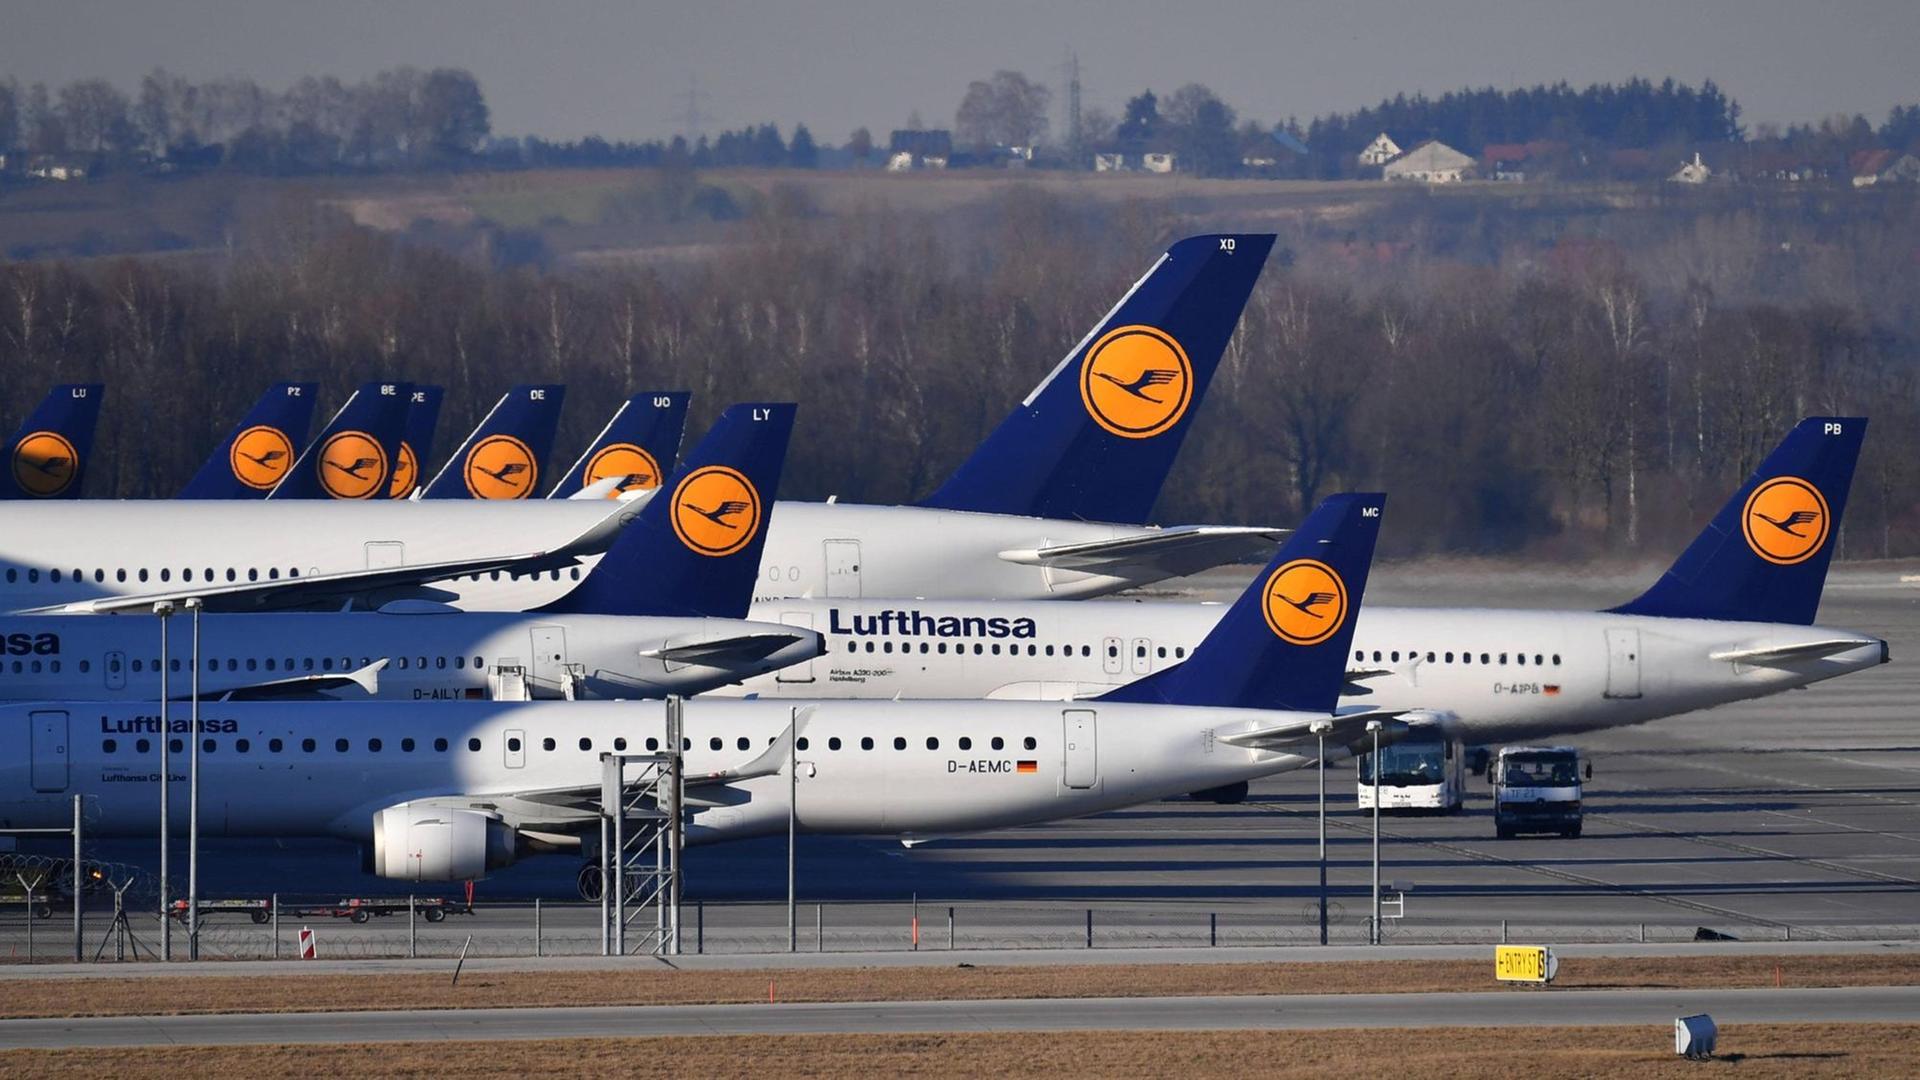 Auf dem Flughafen in München stehen viele Lufthansa-Flugzeuge.